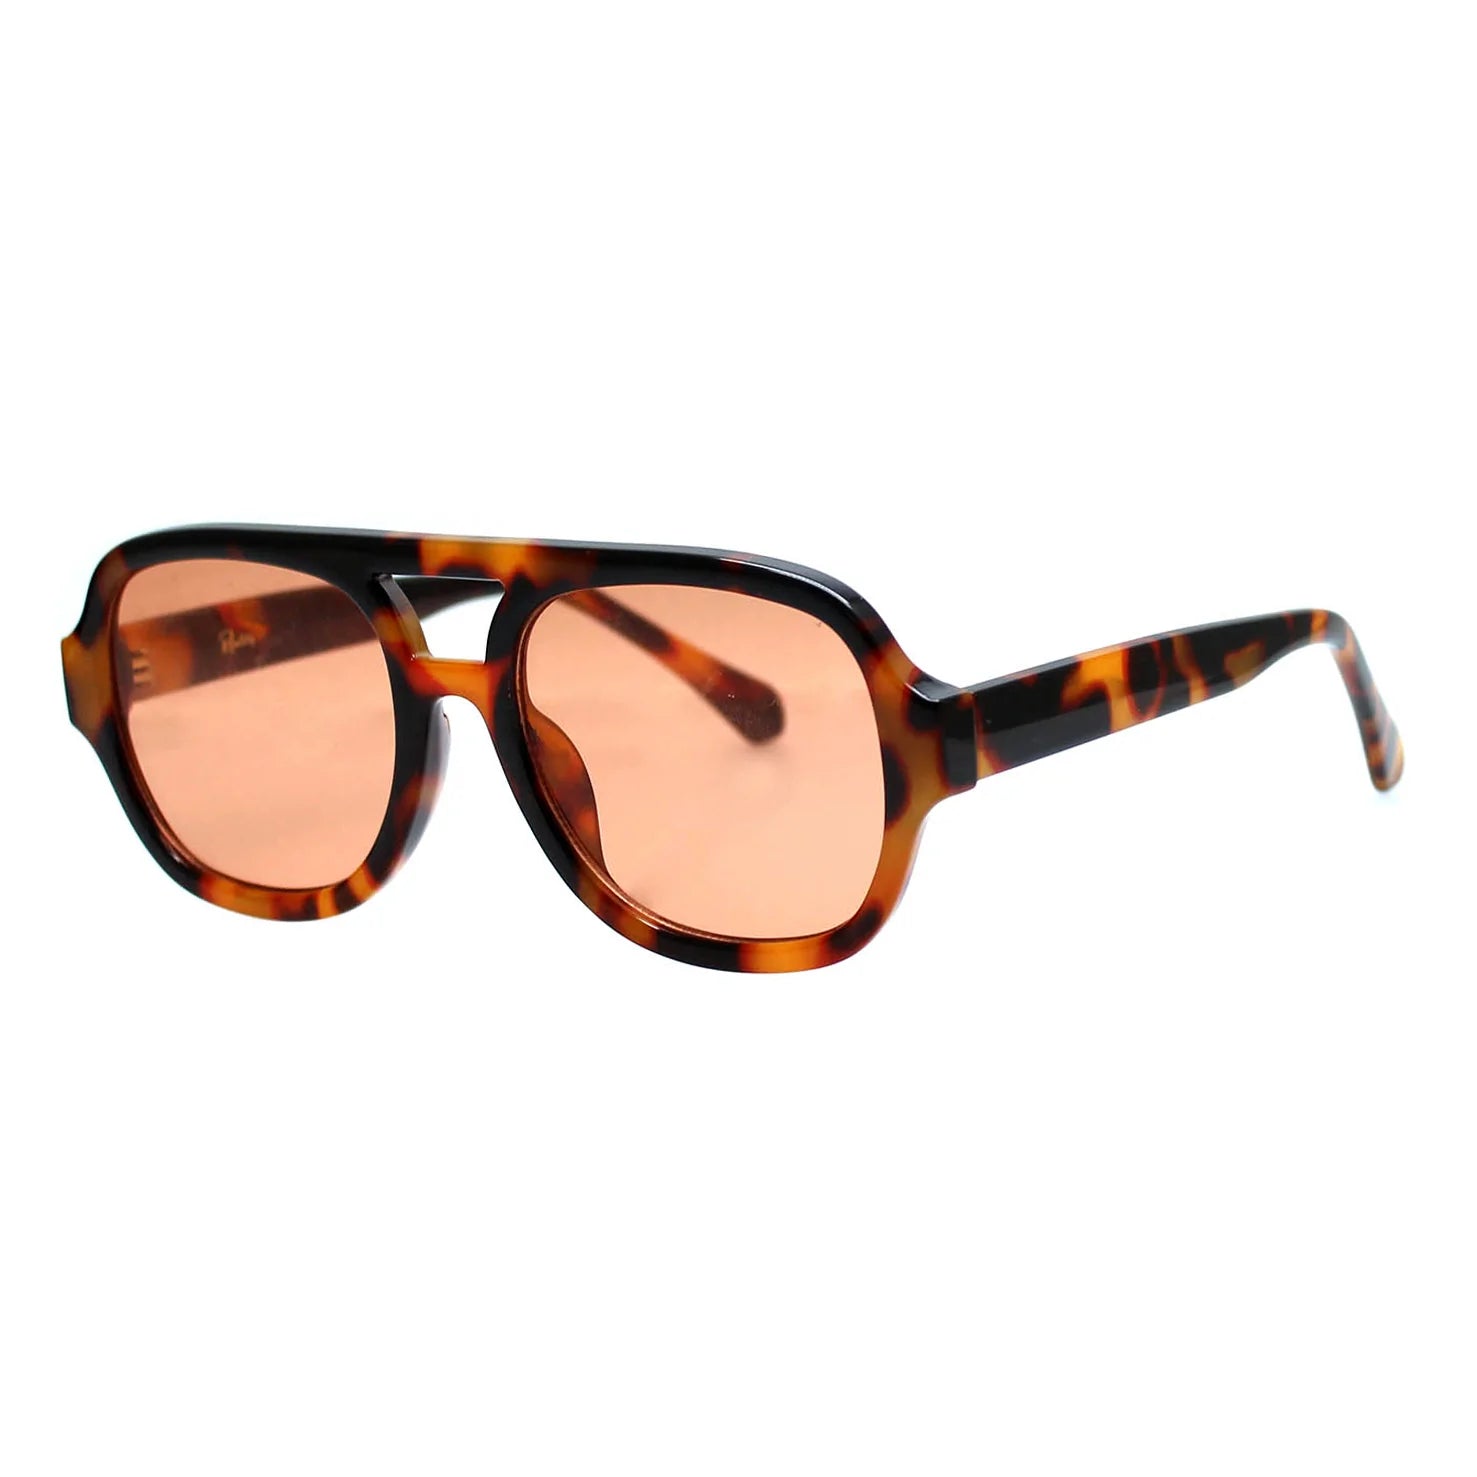 The Special Sunglasses - Beechworth Emporium